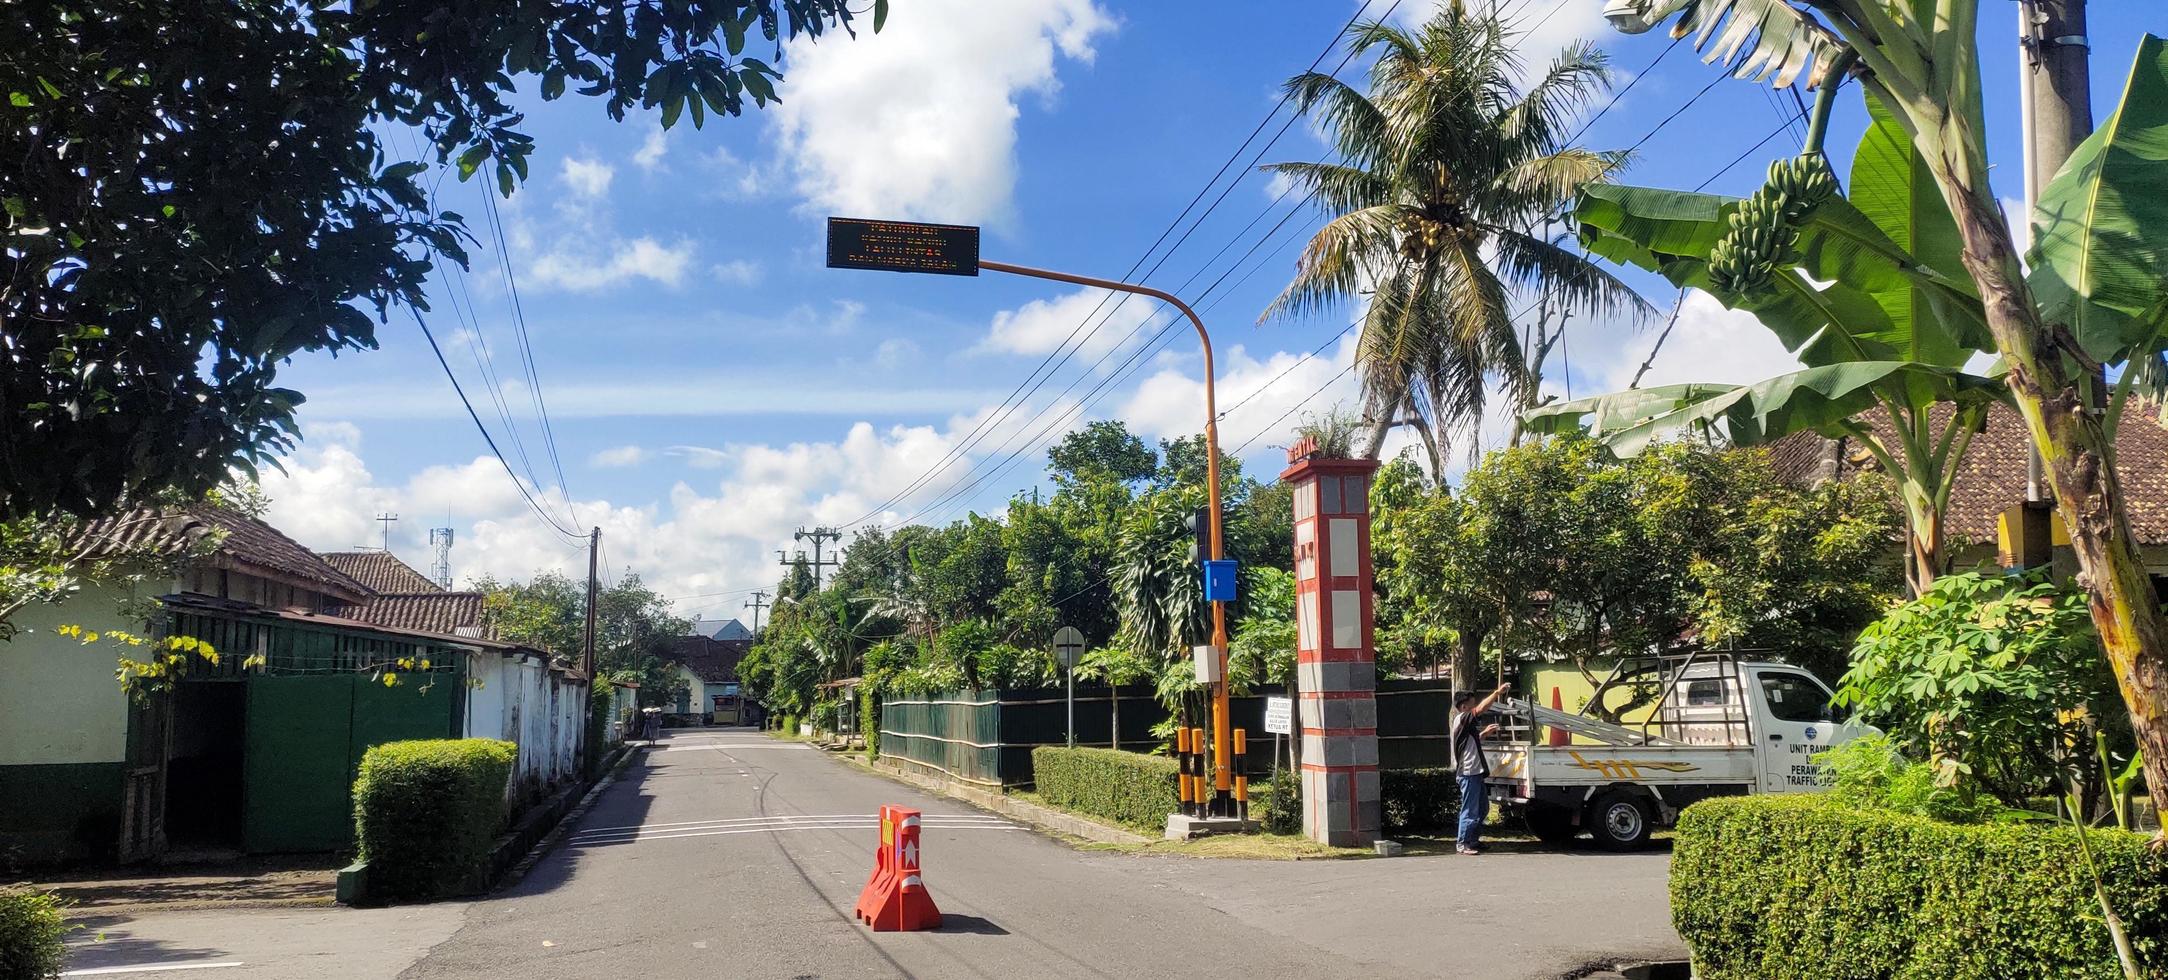 magelang, 2022. instalação de sinais de trânsito na bifurcação da estrada foto